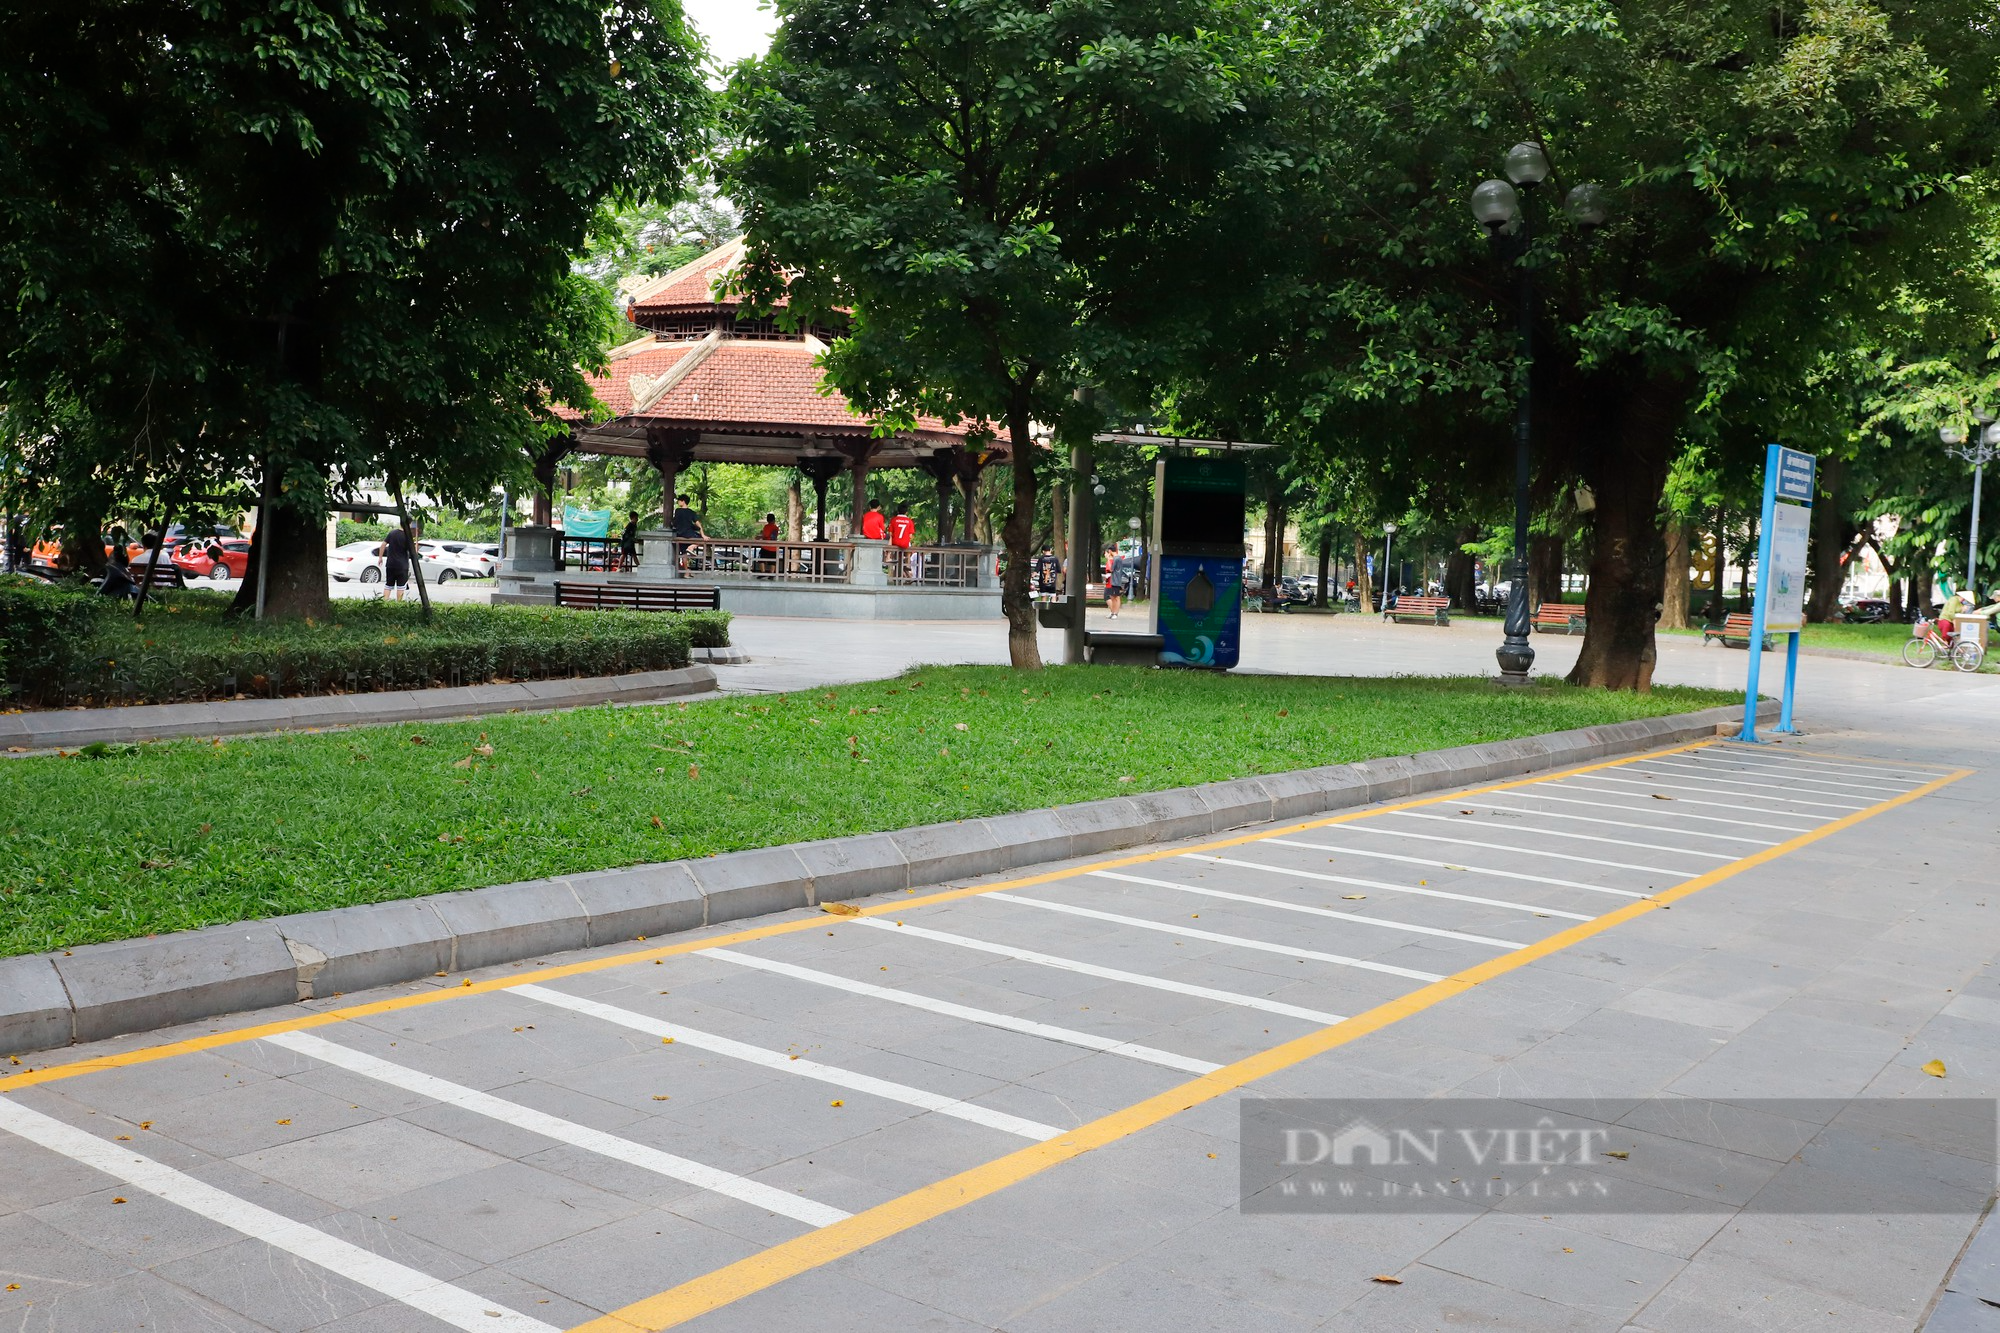 Hàng loạt trạm xe đạp công cộng tại Hà Nội bỏ không dù người dân mong chờ từng ngày - Ảnh 11.